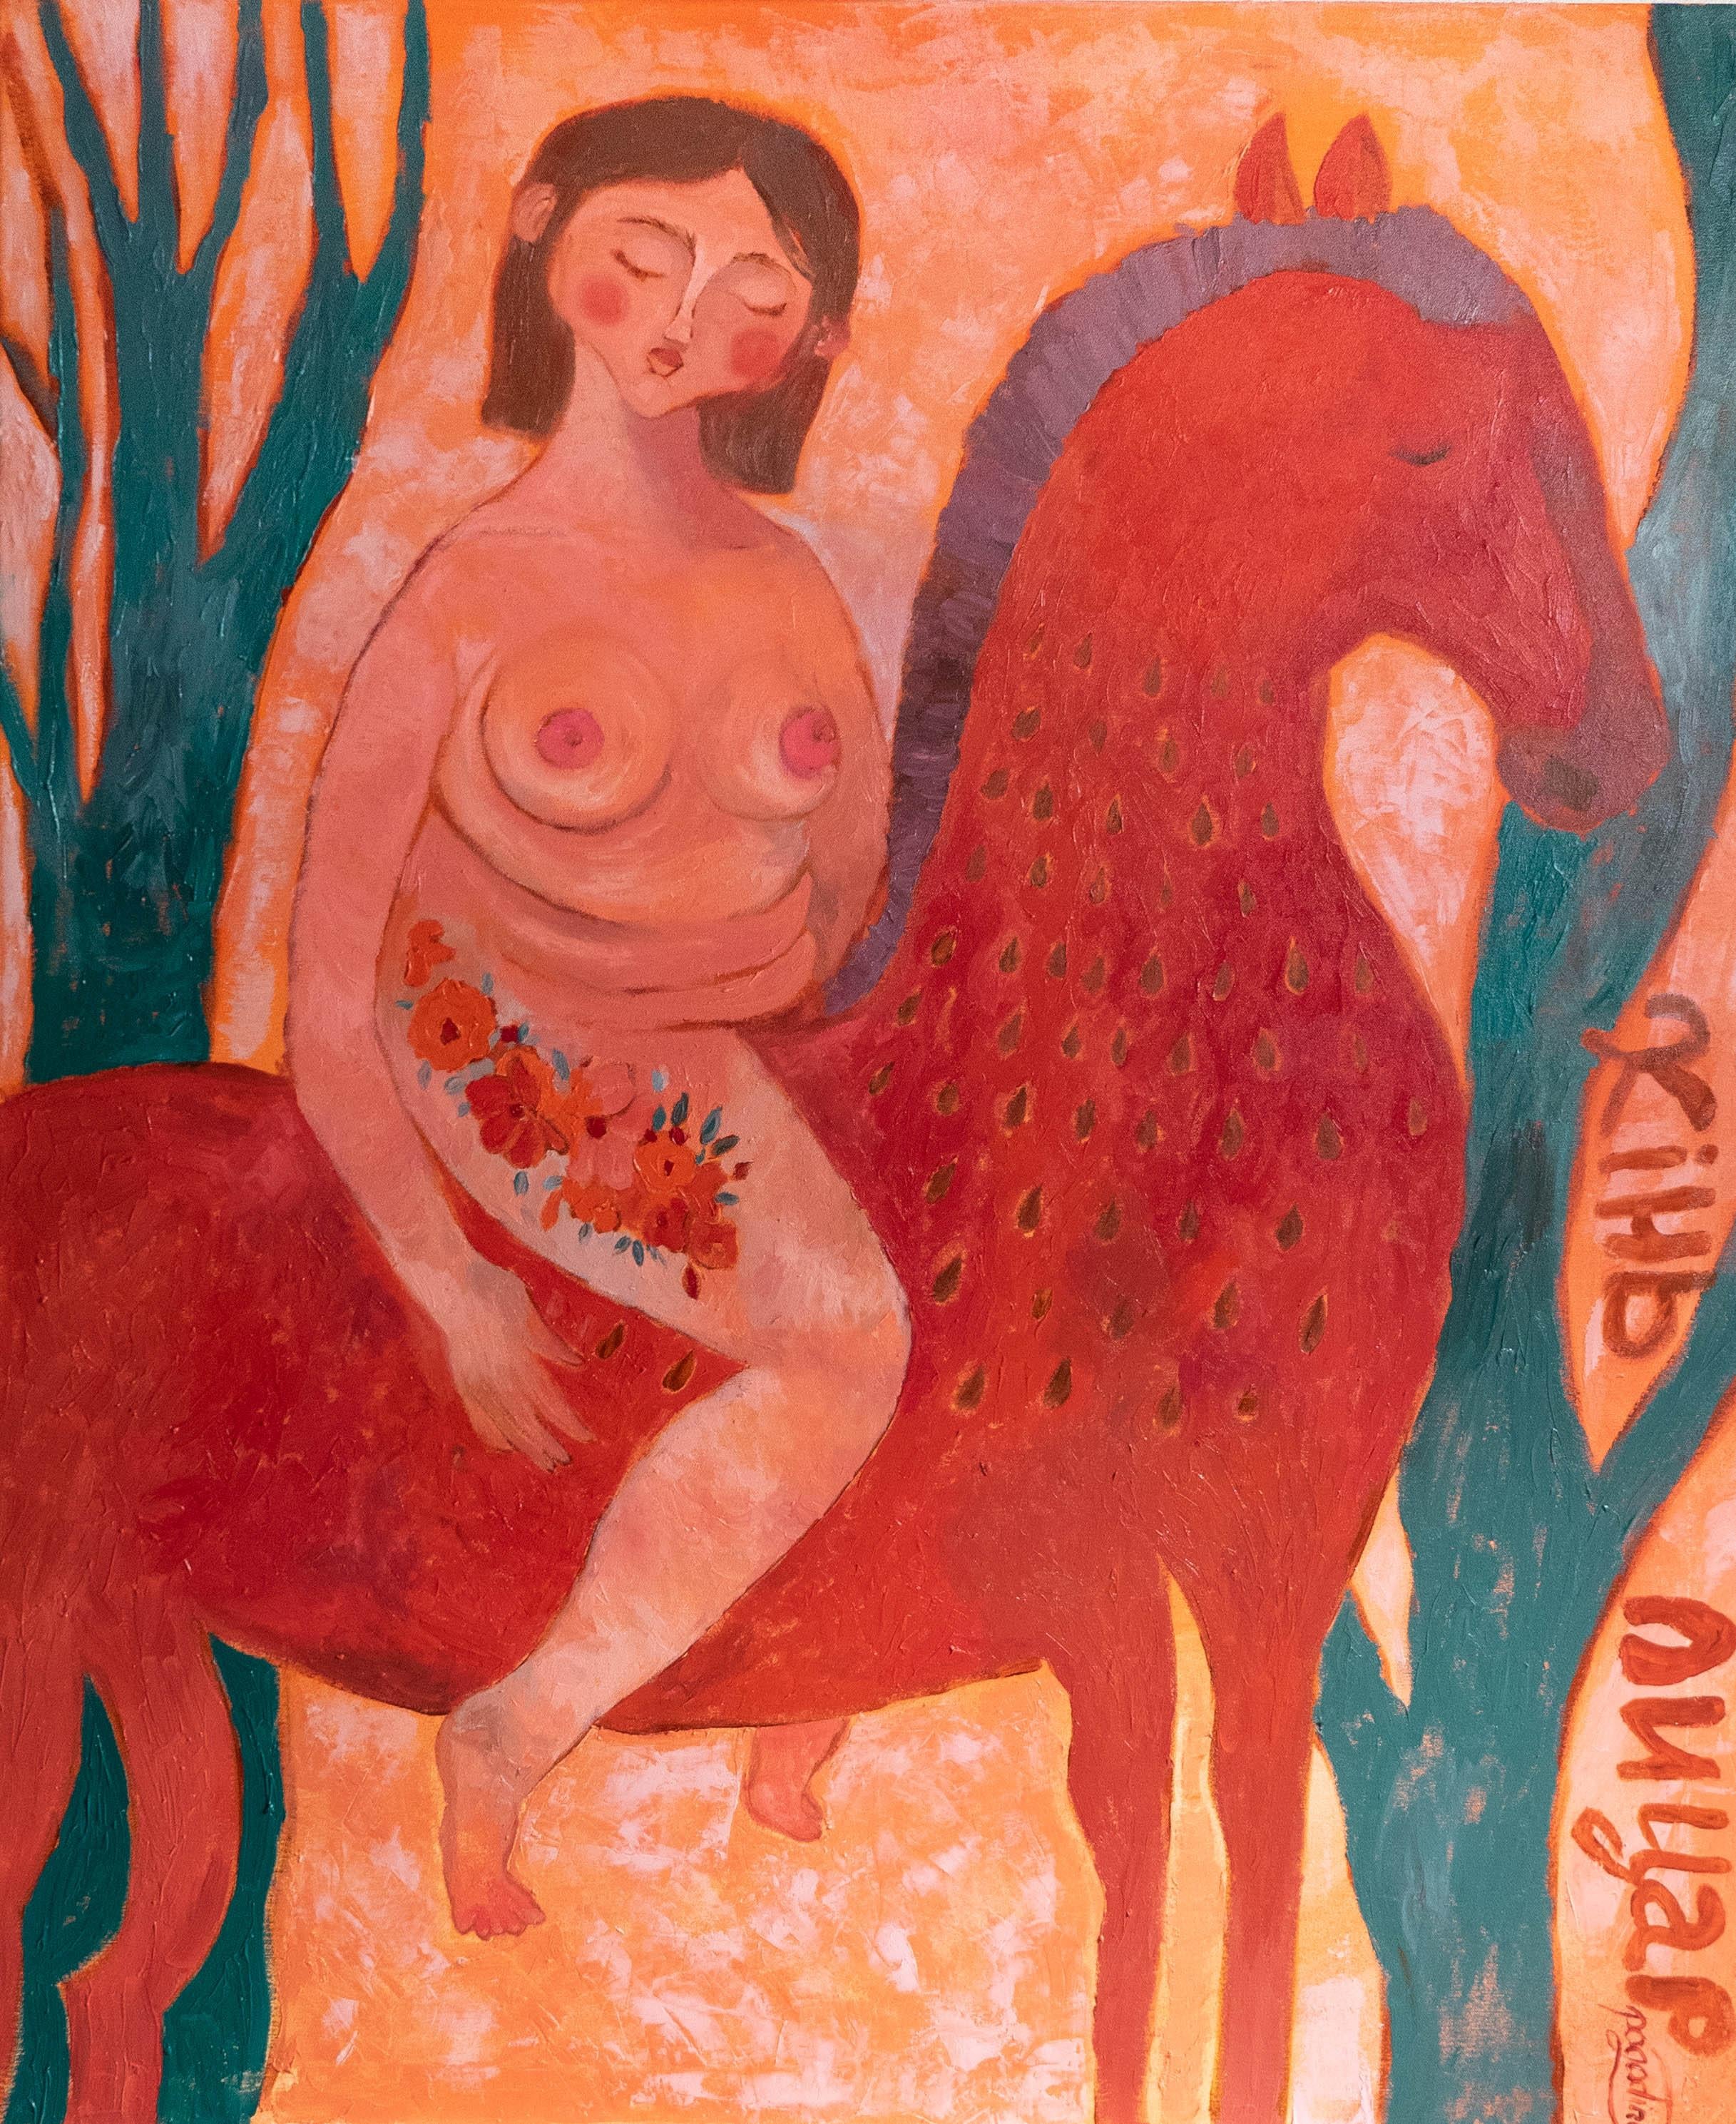 ÜBER DAS KUNSTWERK

"Ich habe das Pferd. Am I a Knight?" webt eine Erzählung über Selbsterkundung und Identität. Die zentrale Figur, eine Frau auf einem majestätischen Pferd, ist mit warmen, erdigen Terrakotta- und Siena-Tönen gemalt, die ihre